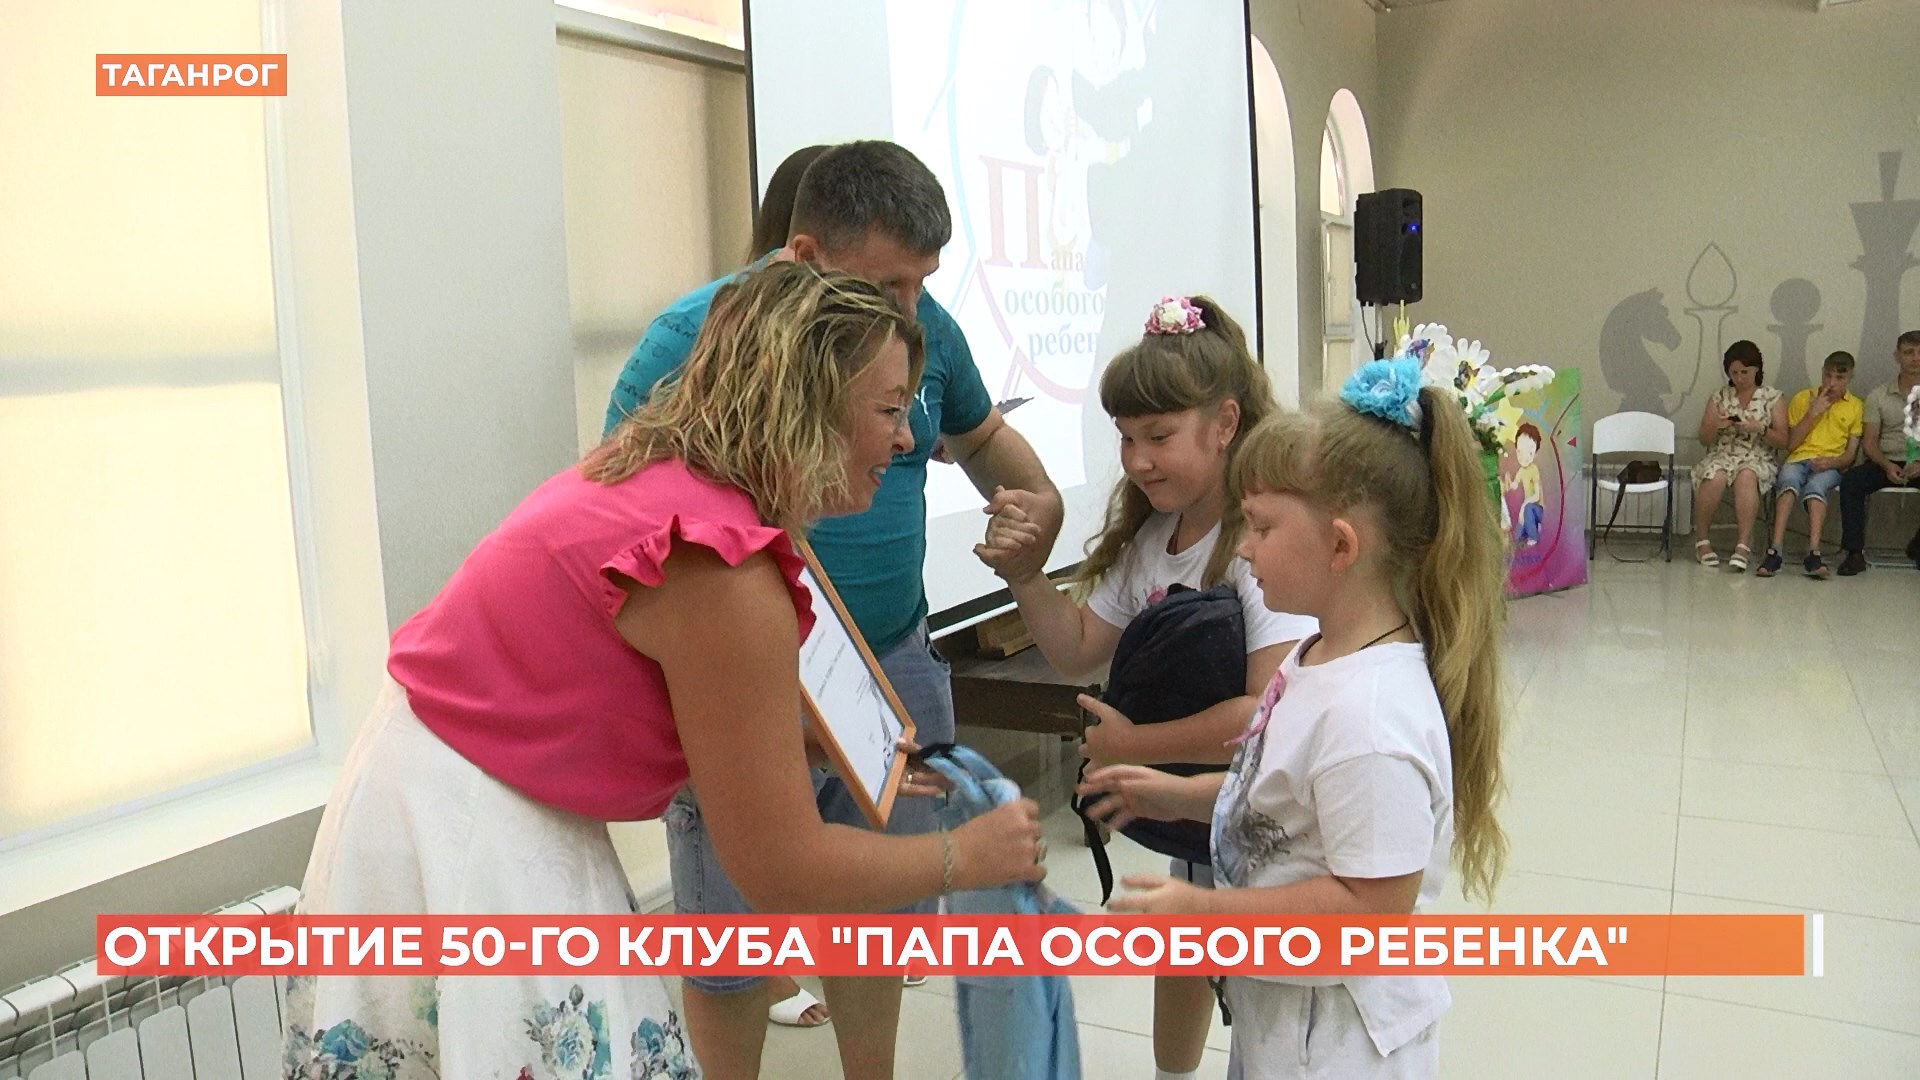 Пятидесятый в нашем регионе клуб «Папа особого ребенка» открыт в Таганроге